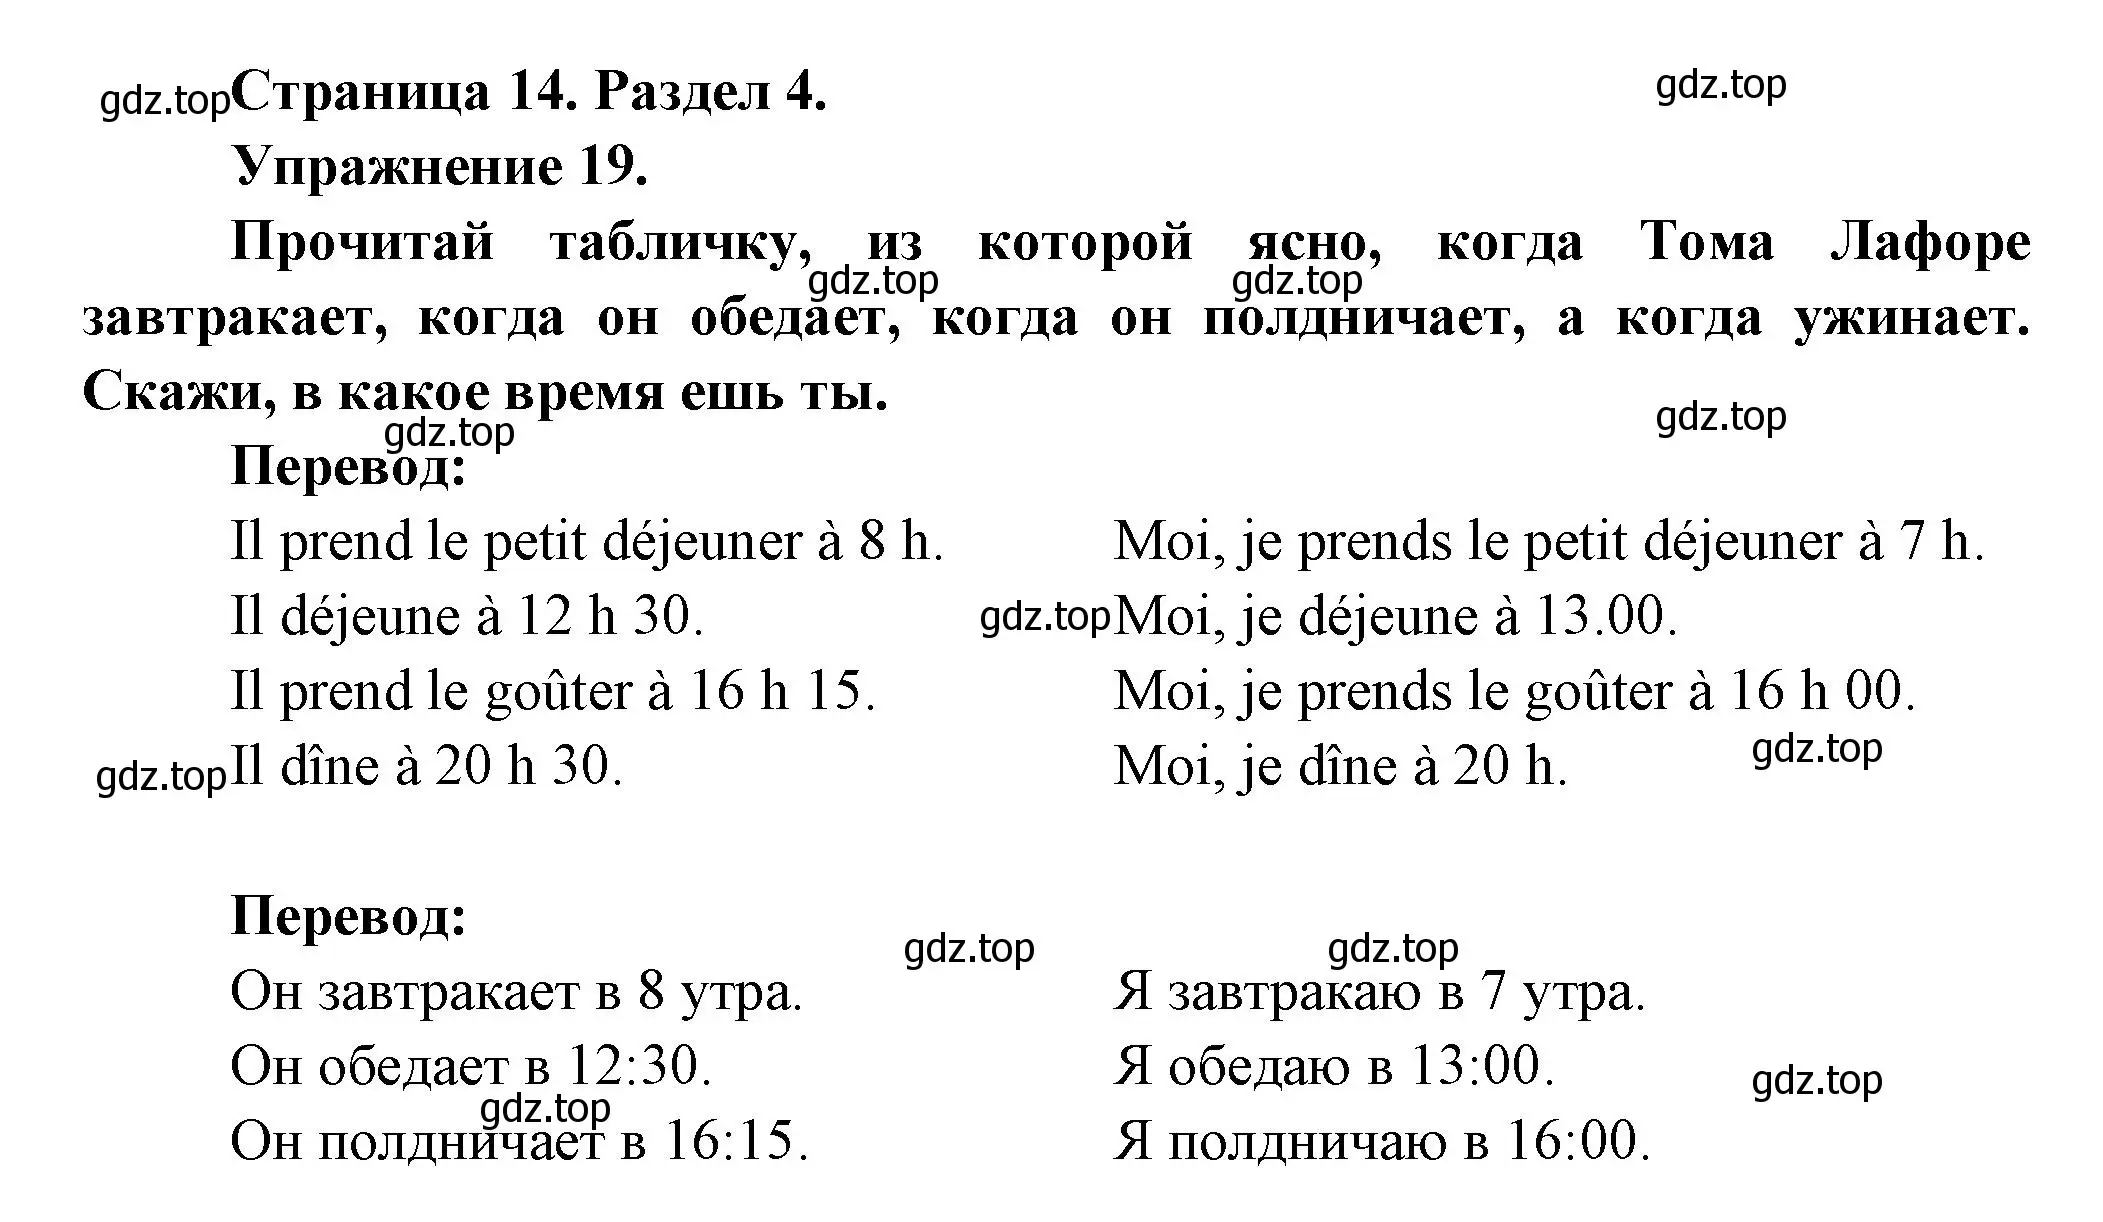 Решение номер 19 (страница 14) гдз по французскому языку 5 класс Береговская, Белосельская, учебник 2 часть